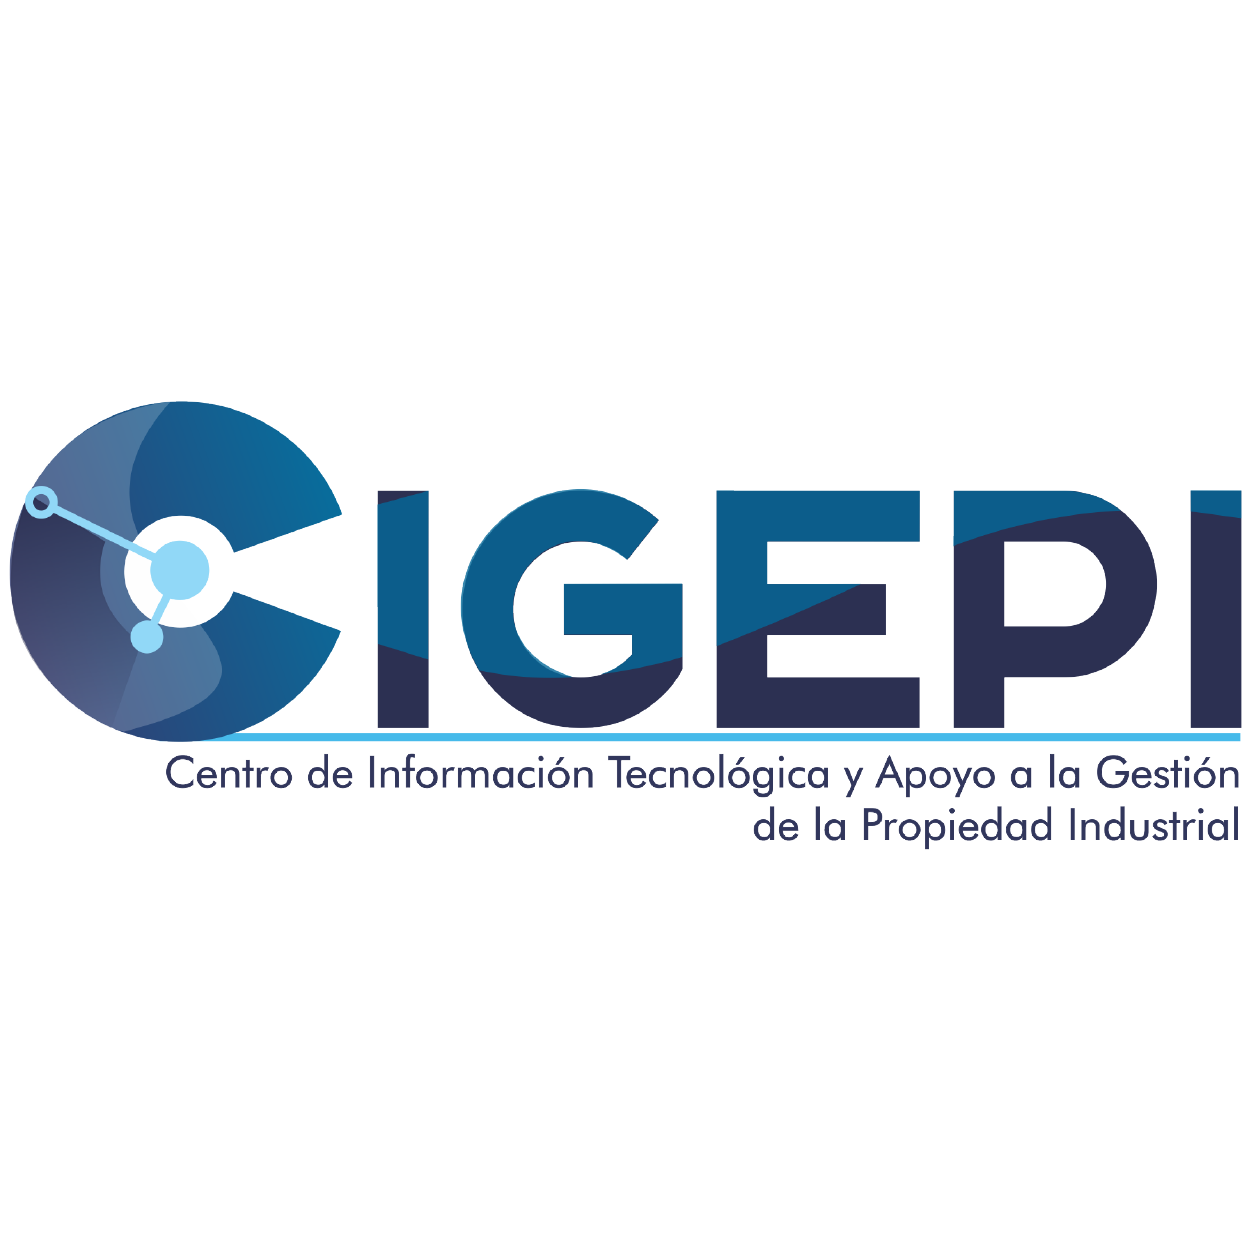 CIGEPI - Centro de Información Tecnológica y Apoyo a la Gestión de la Propiedad Industrial